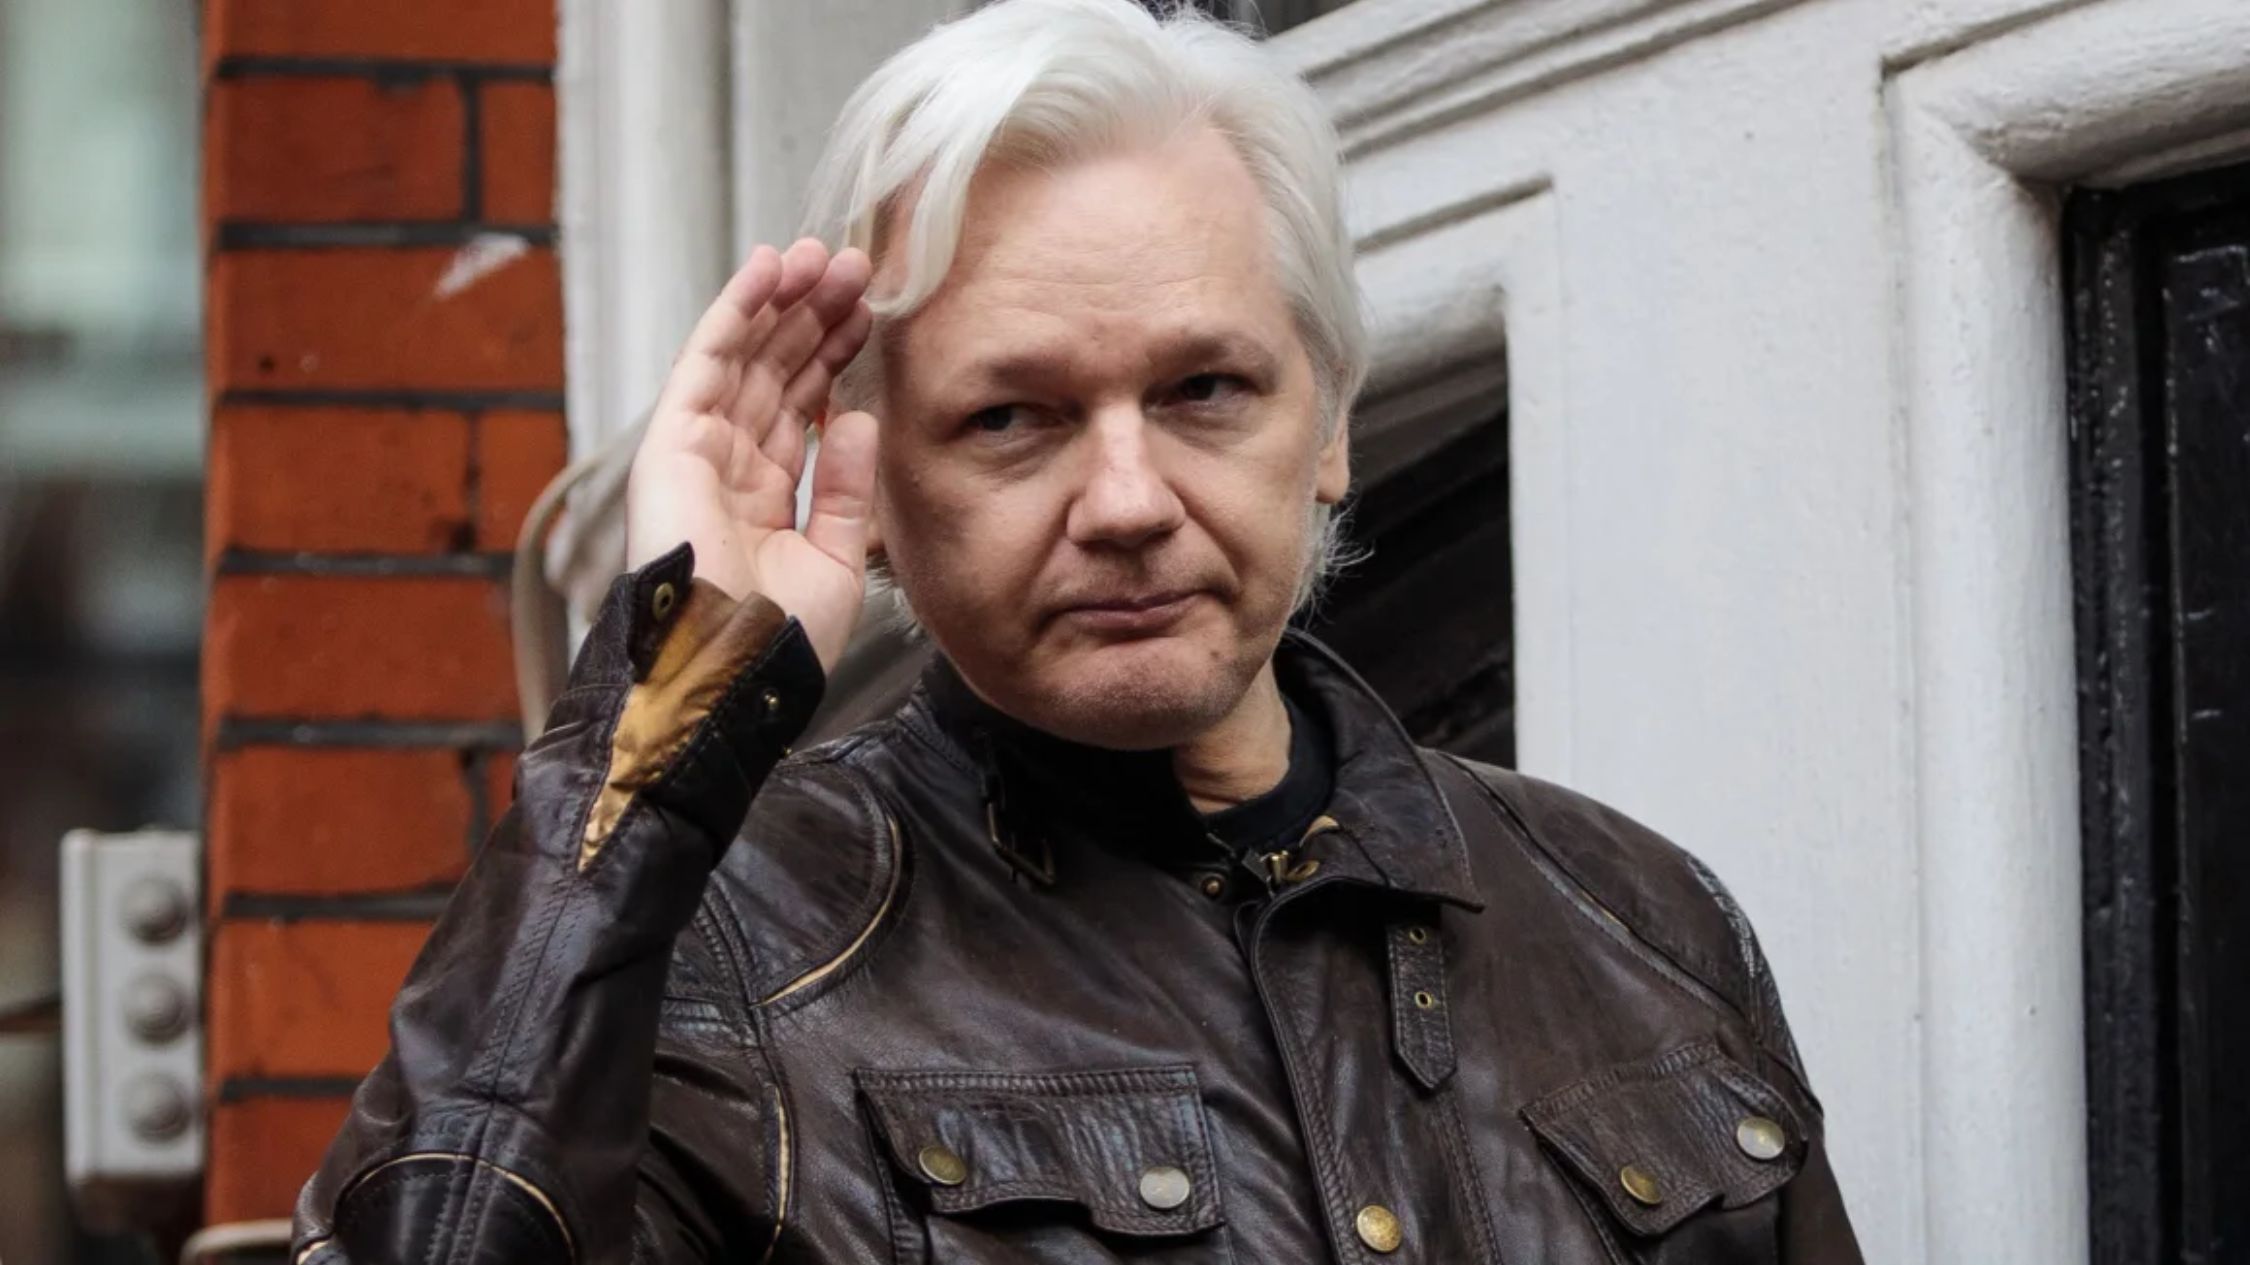 biden dice que “estamos considerando” la solicitud de australia de indultar a assange